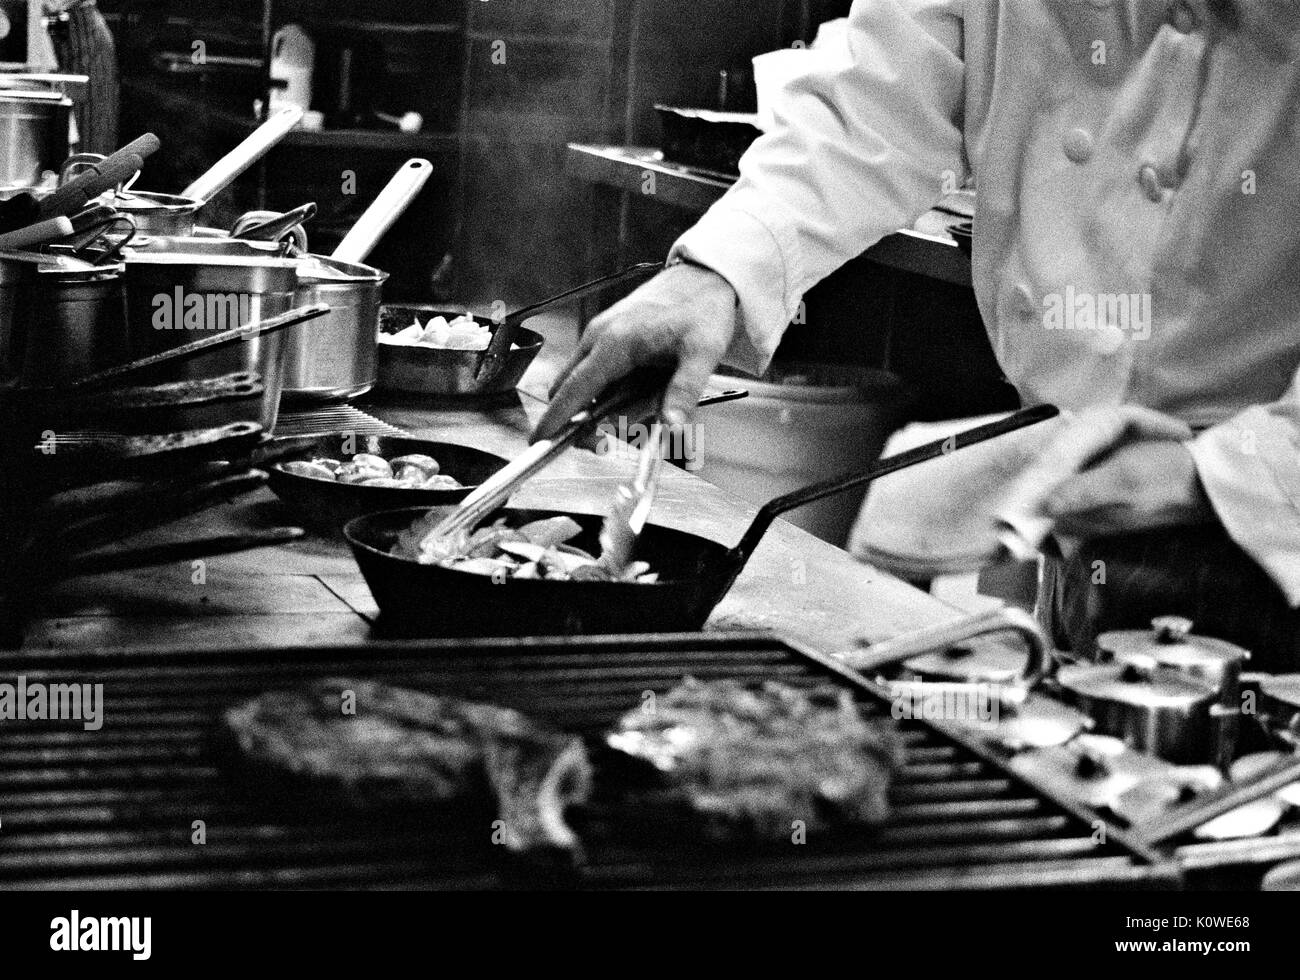 Steak grill in kitchen Stock Photo